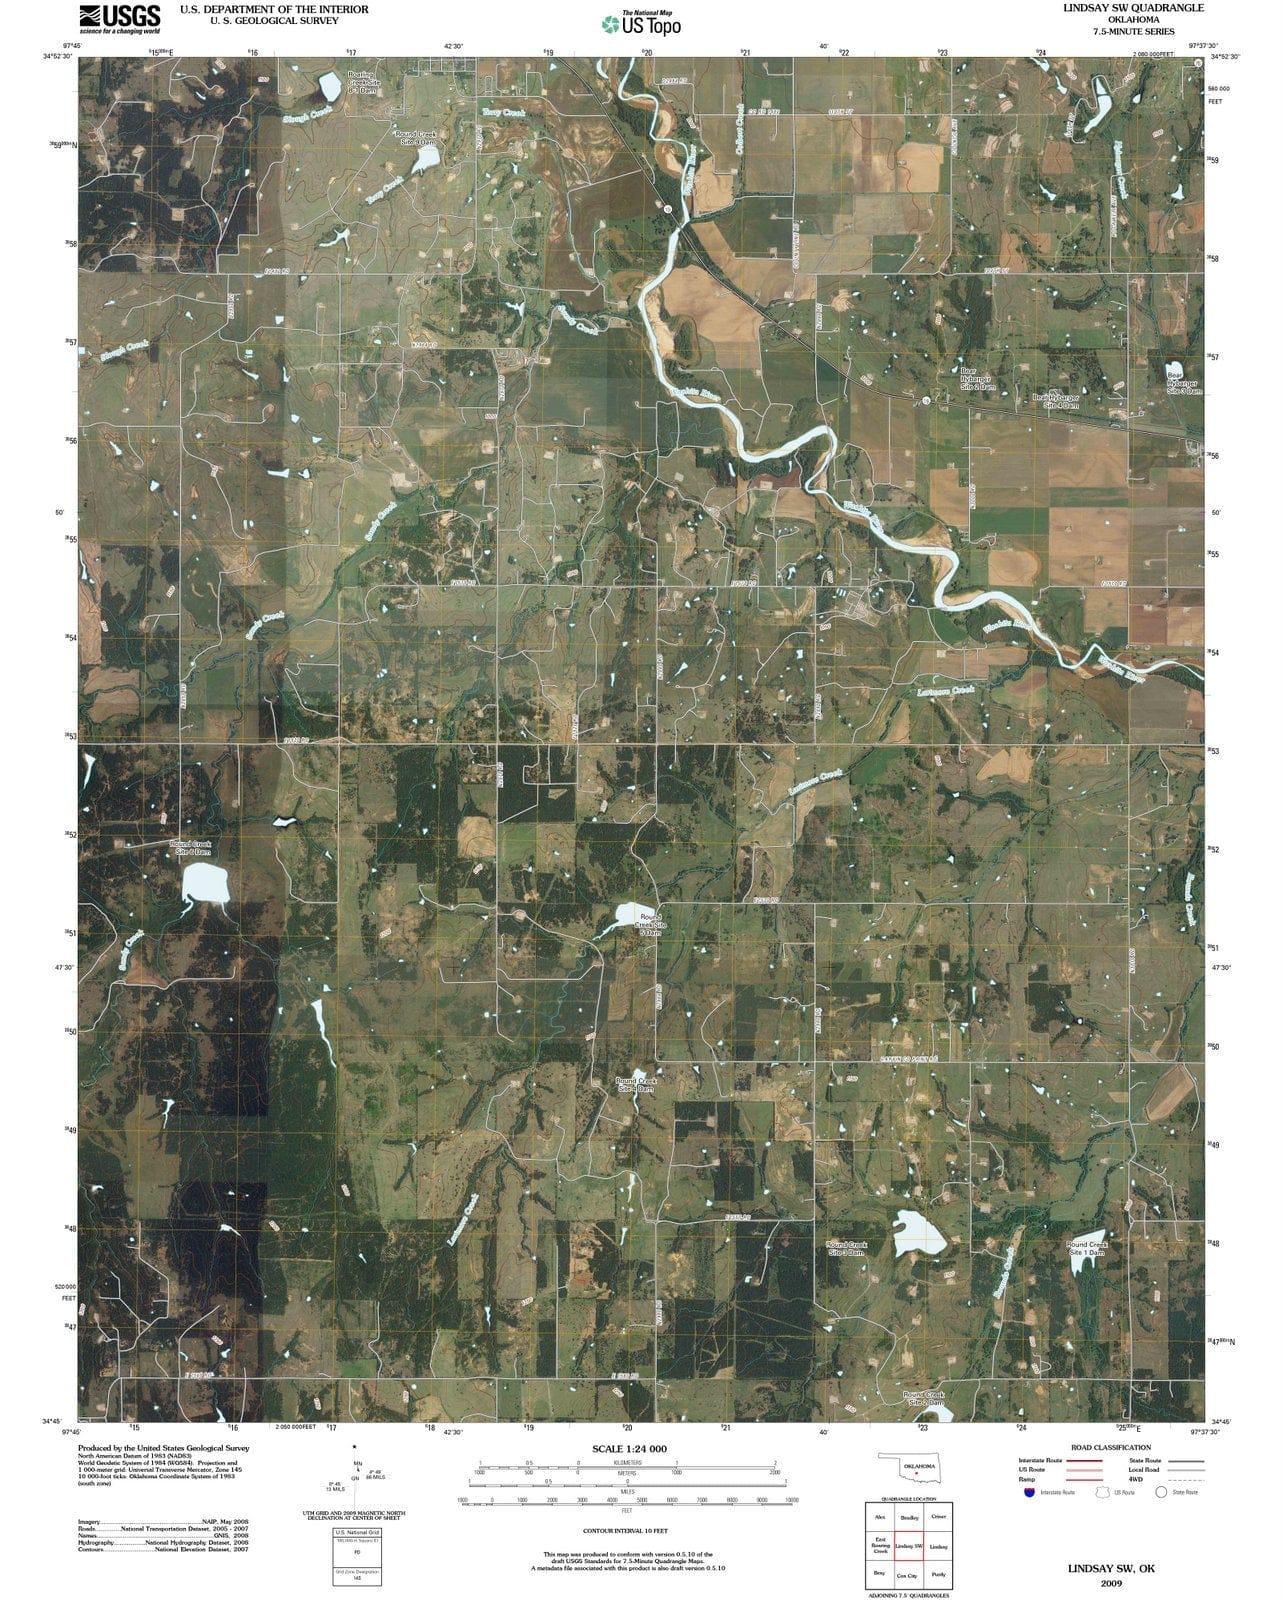 2009 Lindsay, OK - Oklahoma - USGS Topographic Map